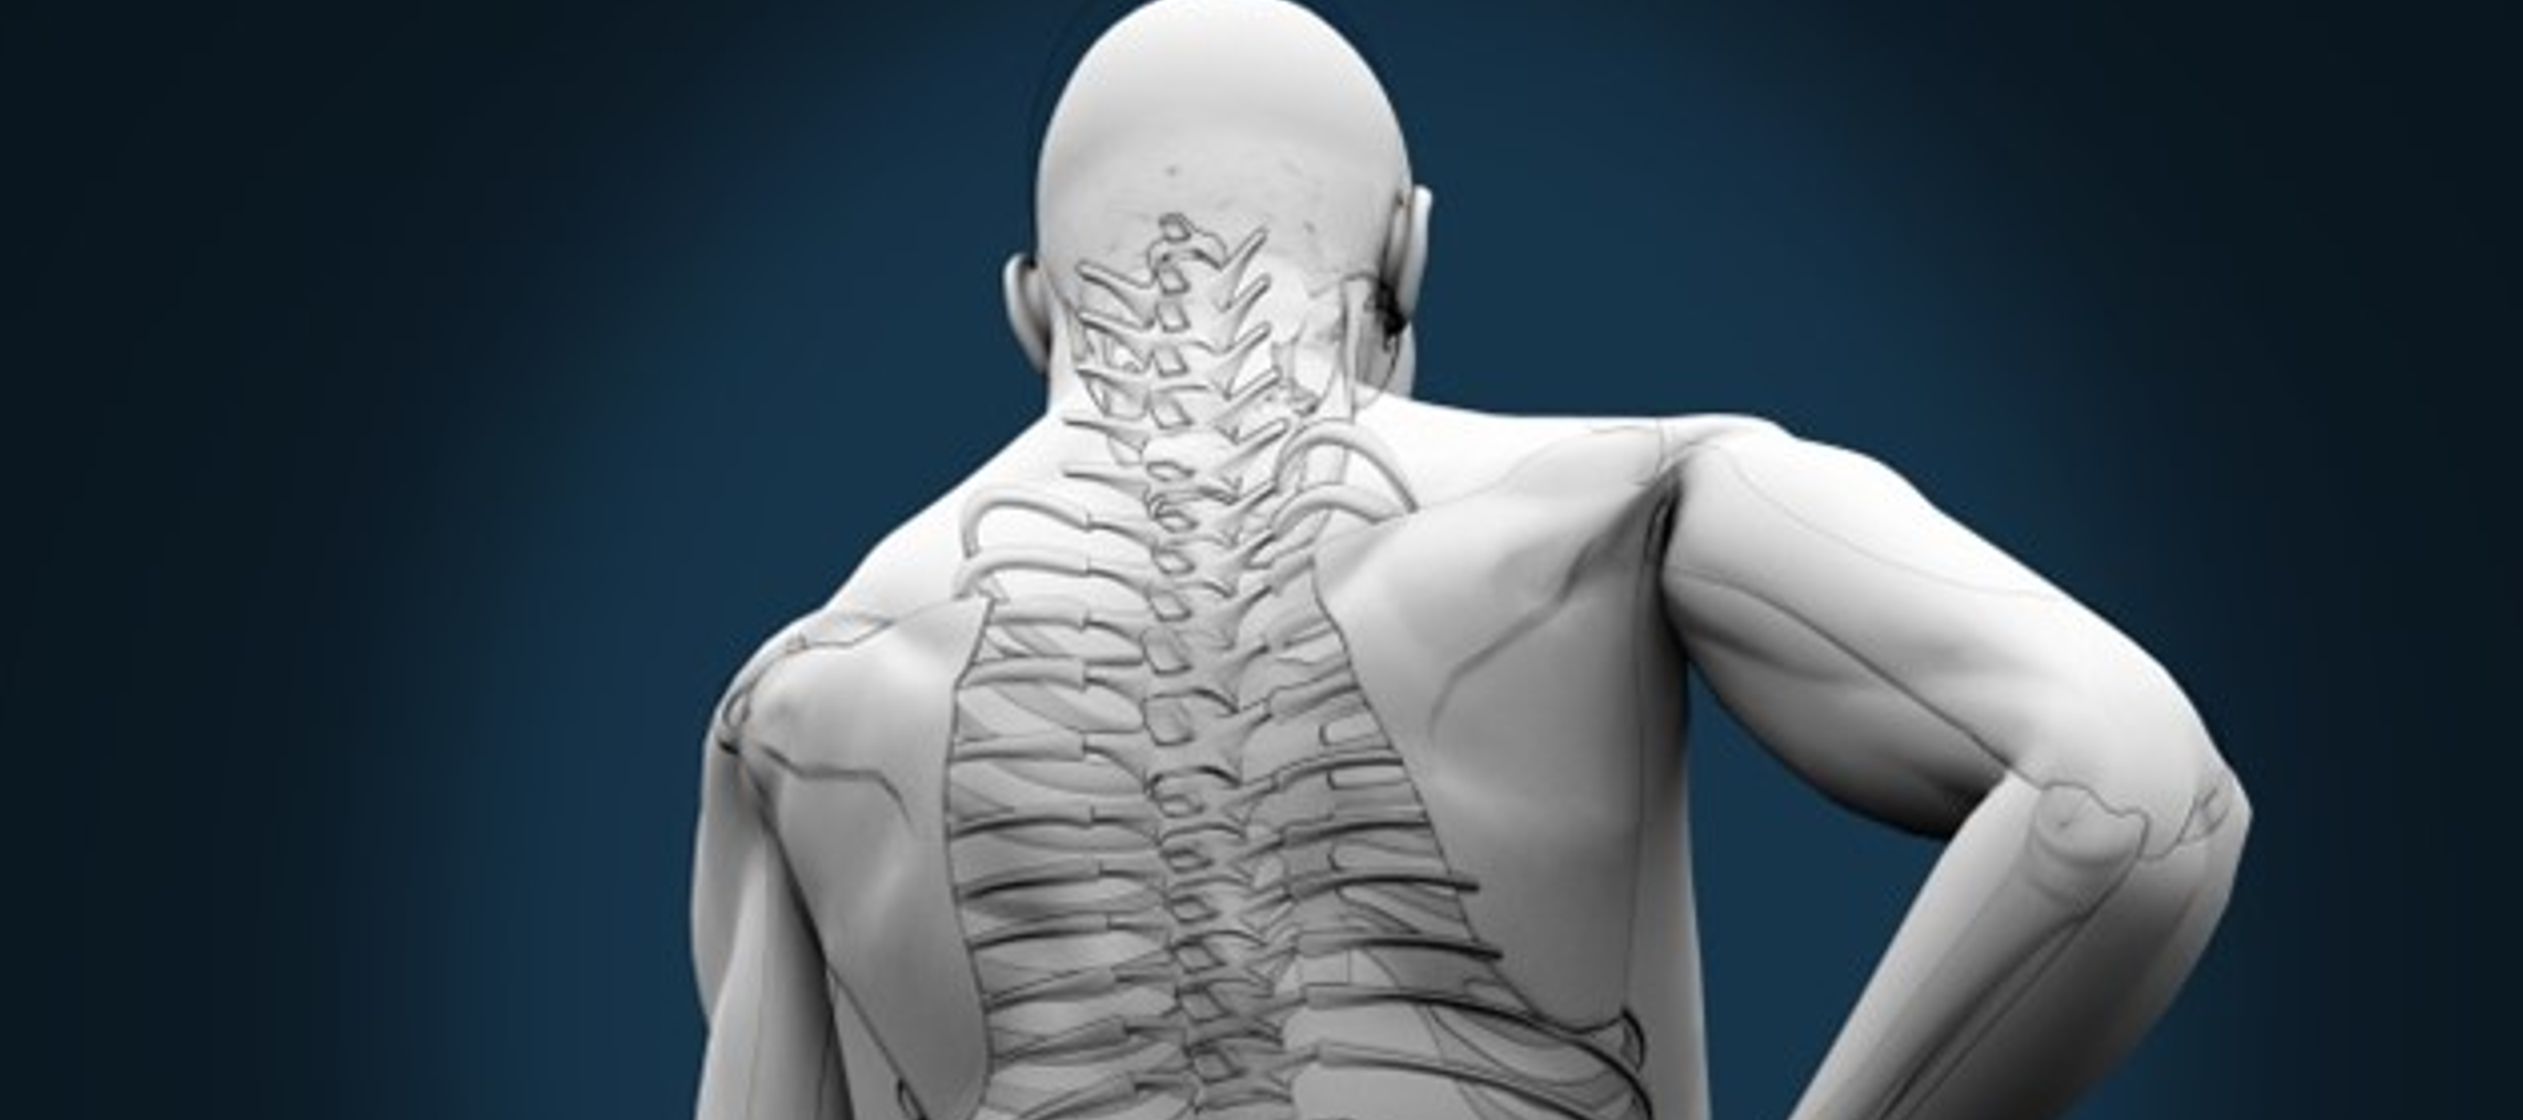 El estudio, "Los reflejos del estiramiento espinal apoyan el control manual eficiente",...